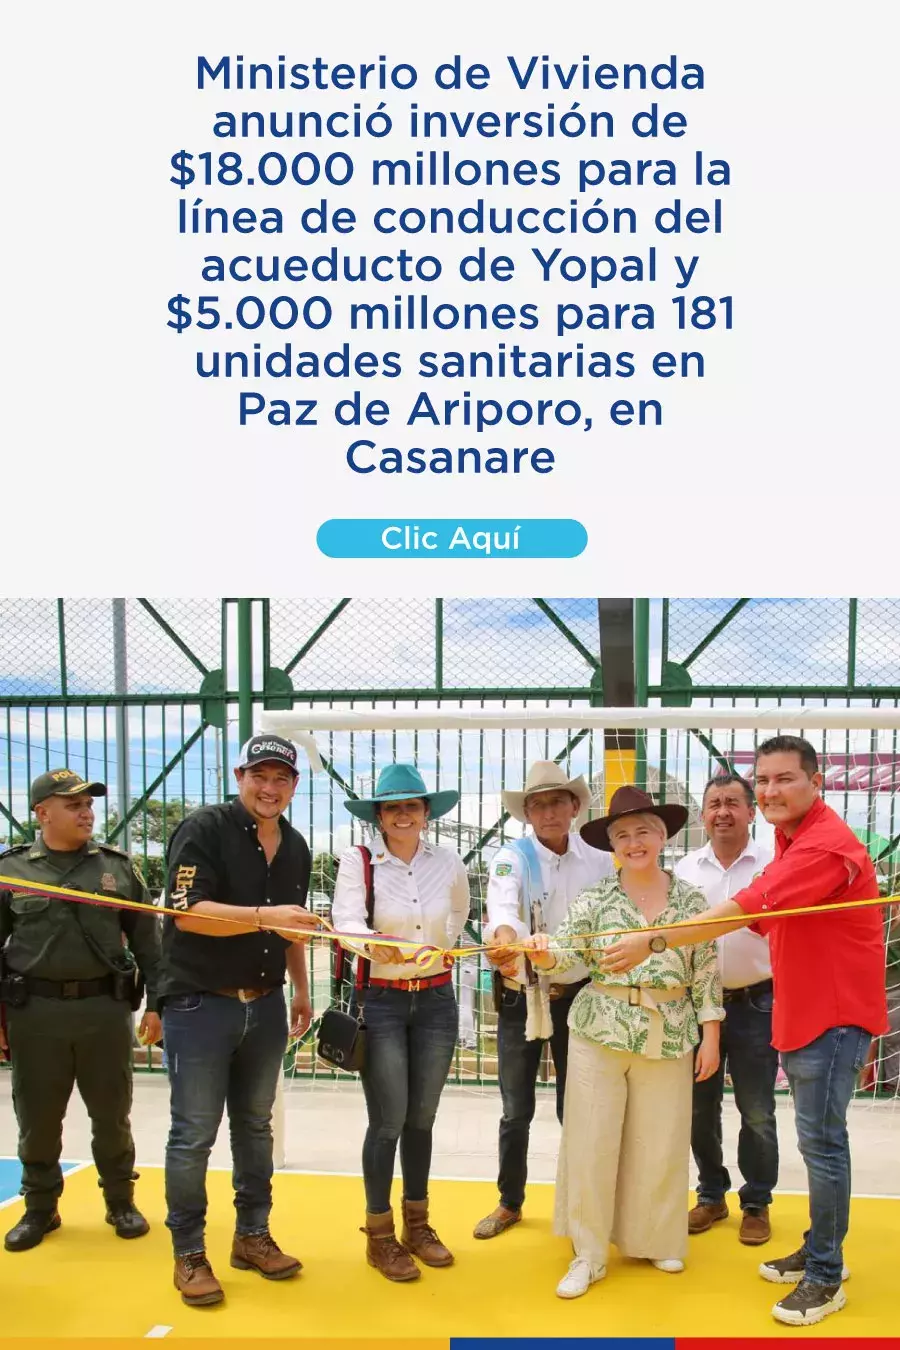 Ministerio de Vivienda anunció inversión de $18.000 millones para la línea de conducción del acueducto de Yopal y $5.000 millones para 181 unidades sanitarias en Paz de Ariporo, en Casanare